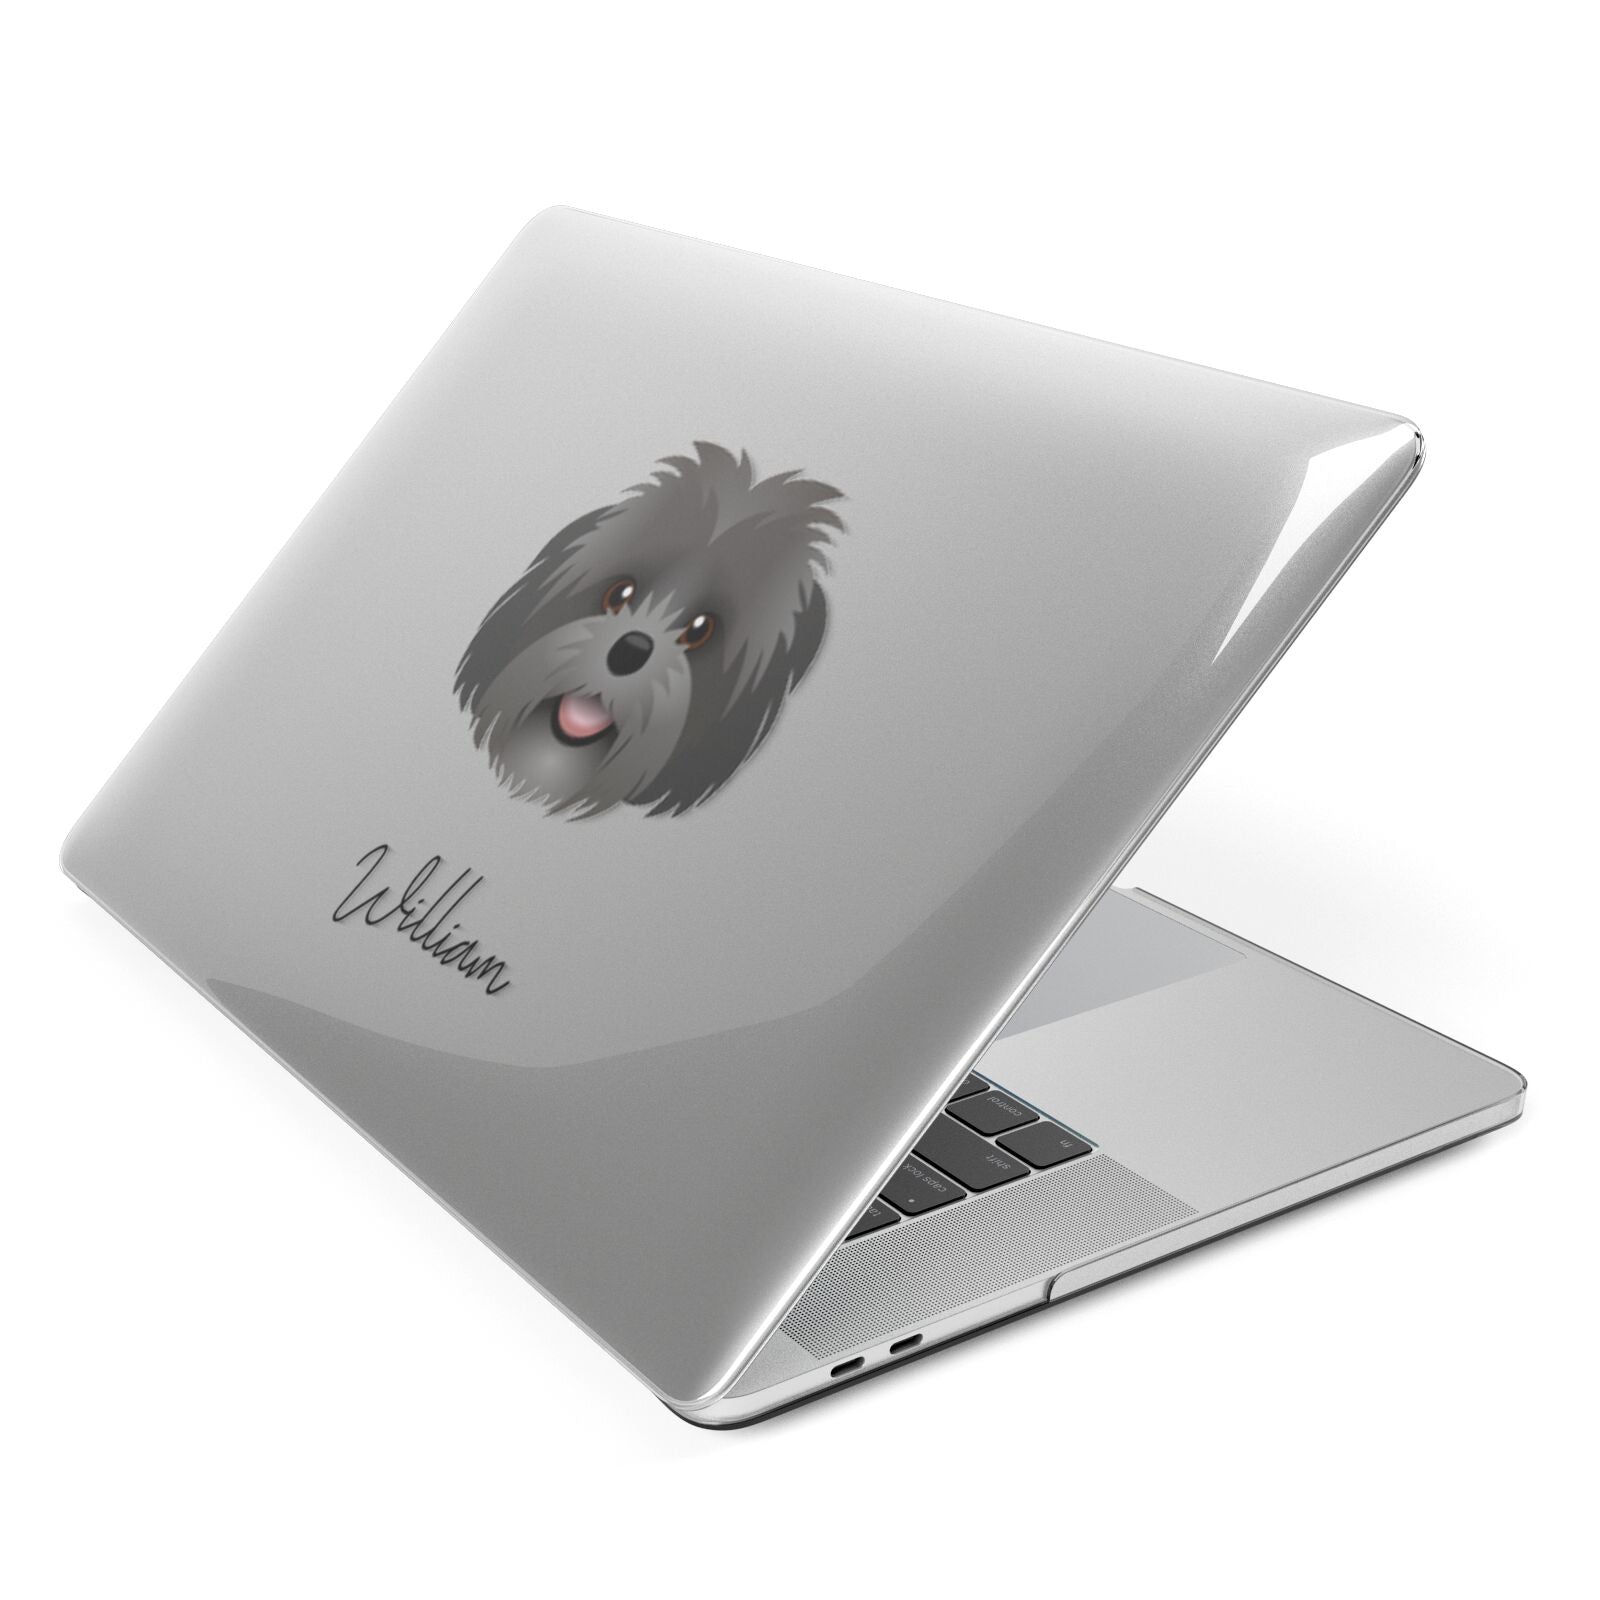 Shih Poo Personalised Apple MacBook Case Side View